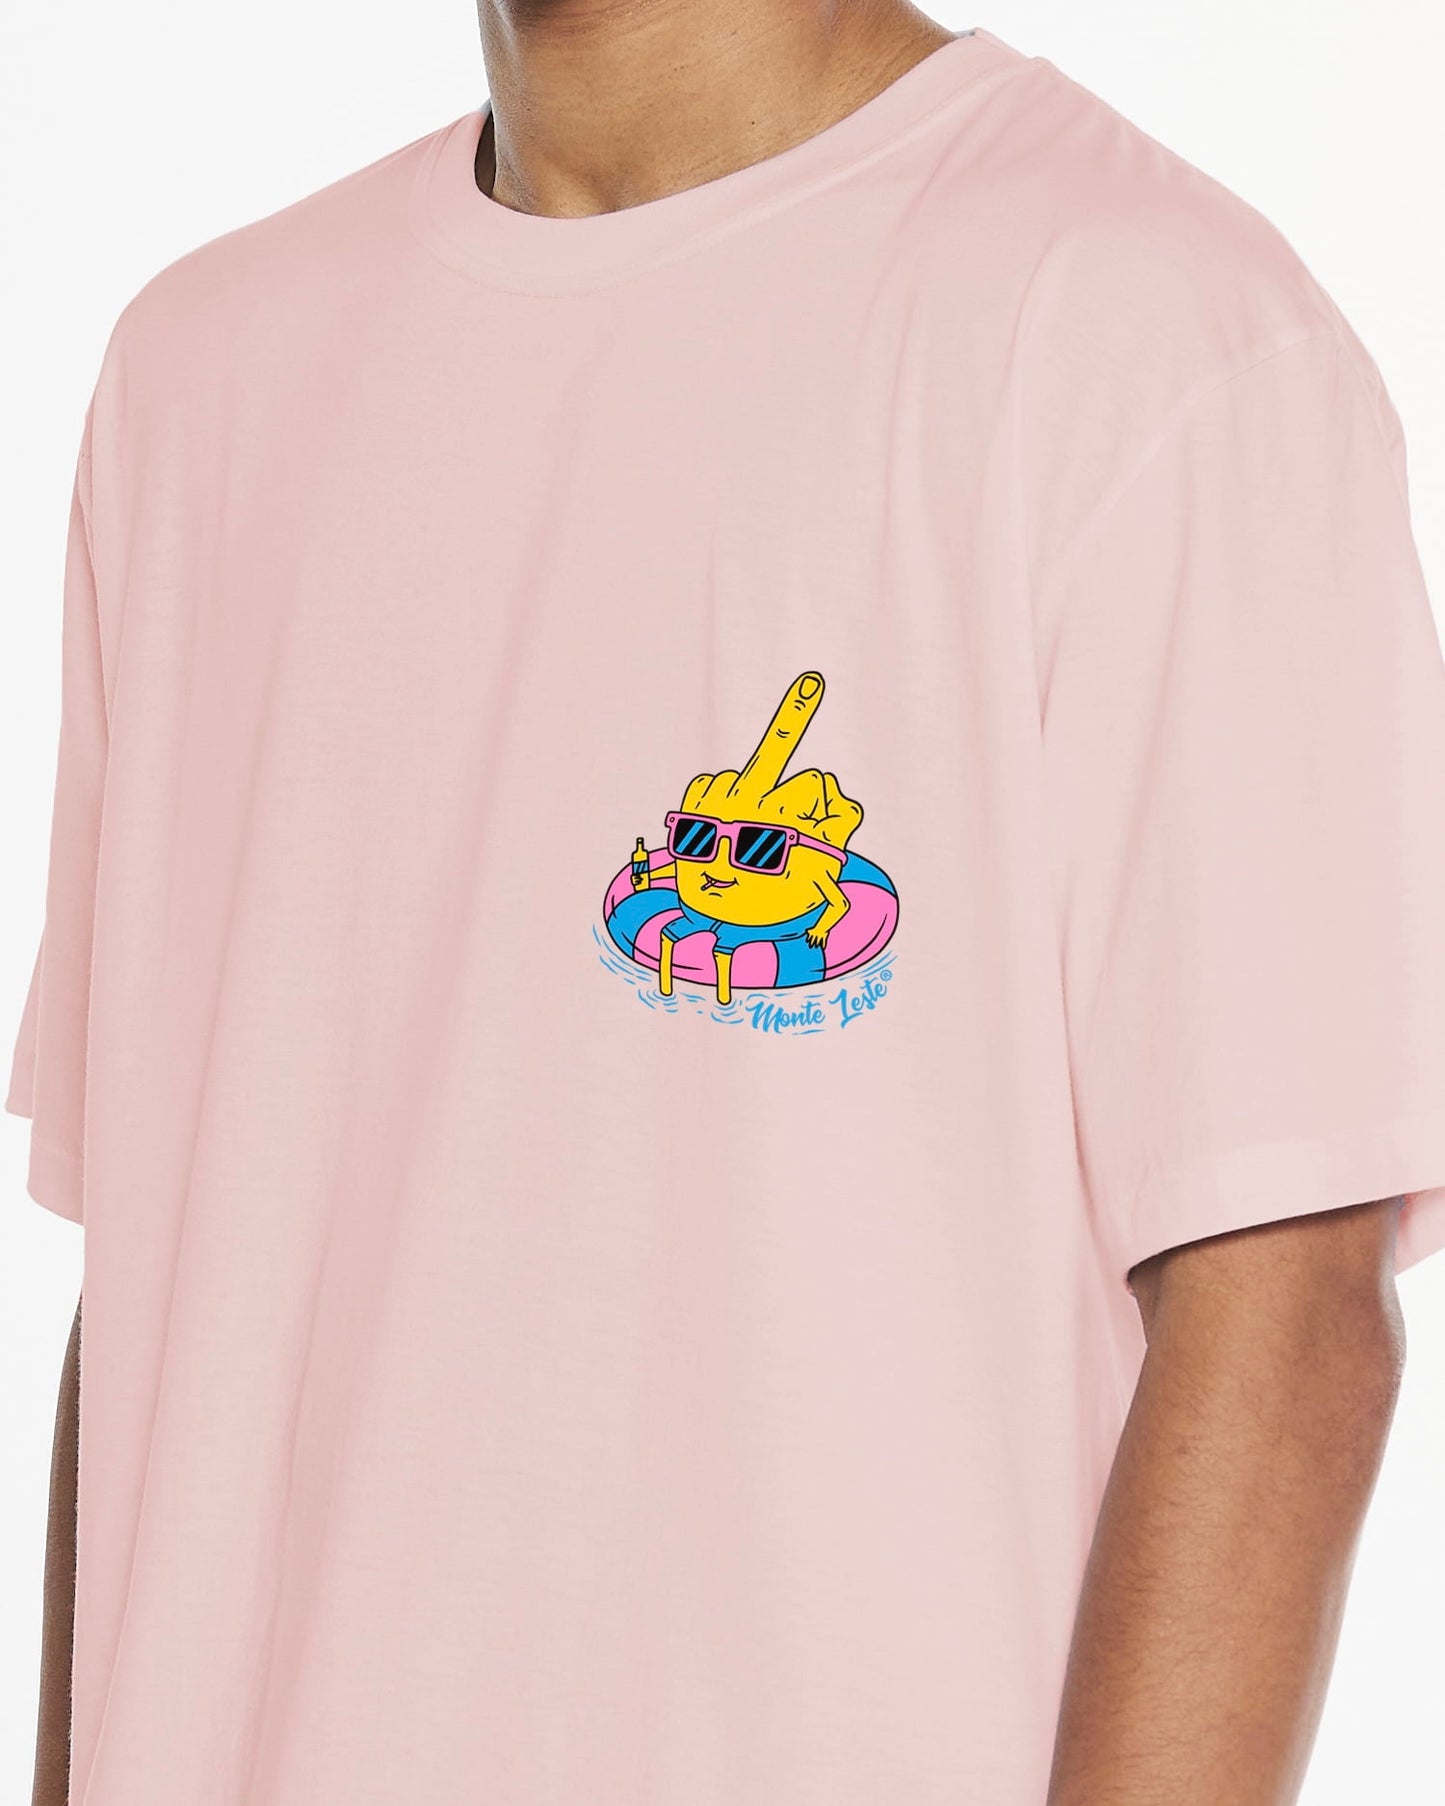 Printed T-Shirt - Pink Fun